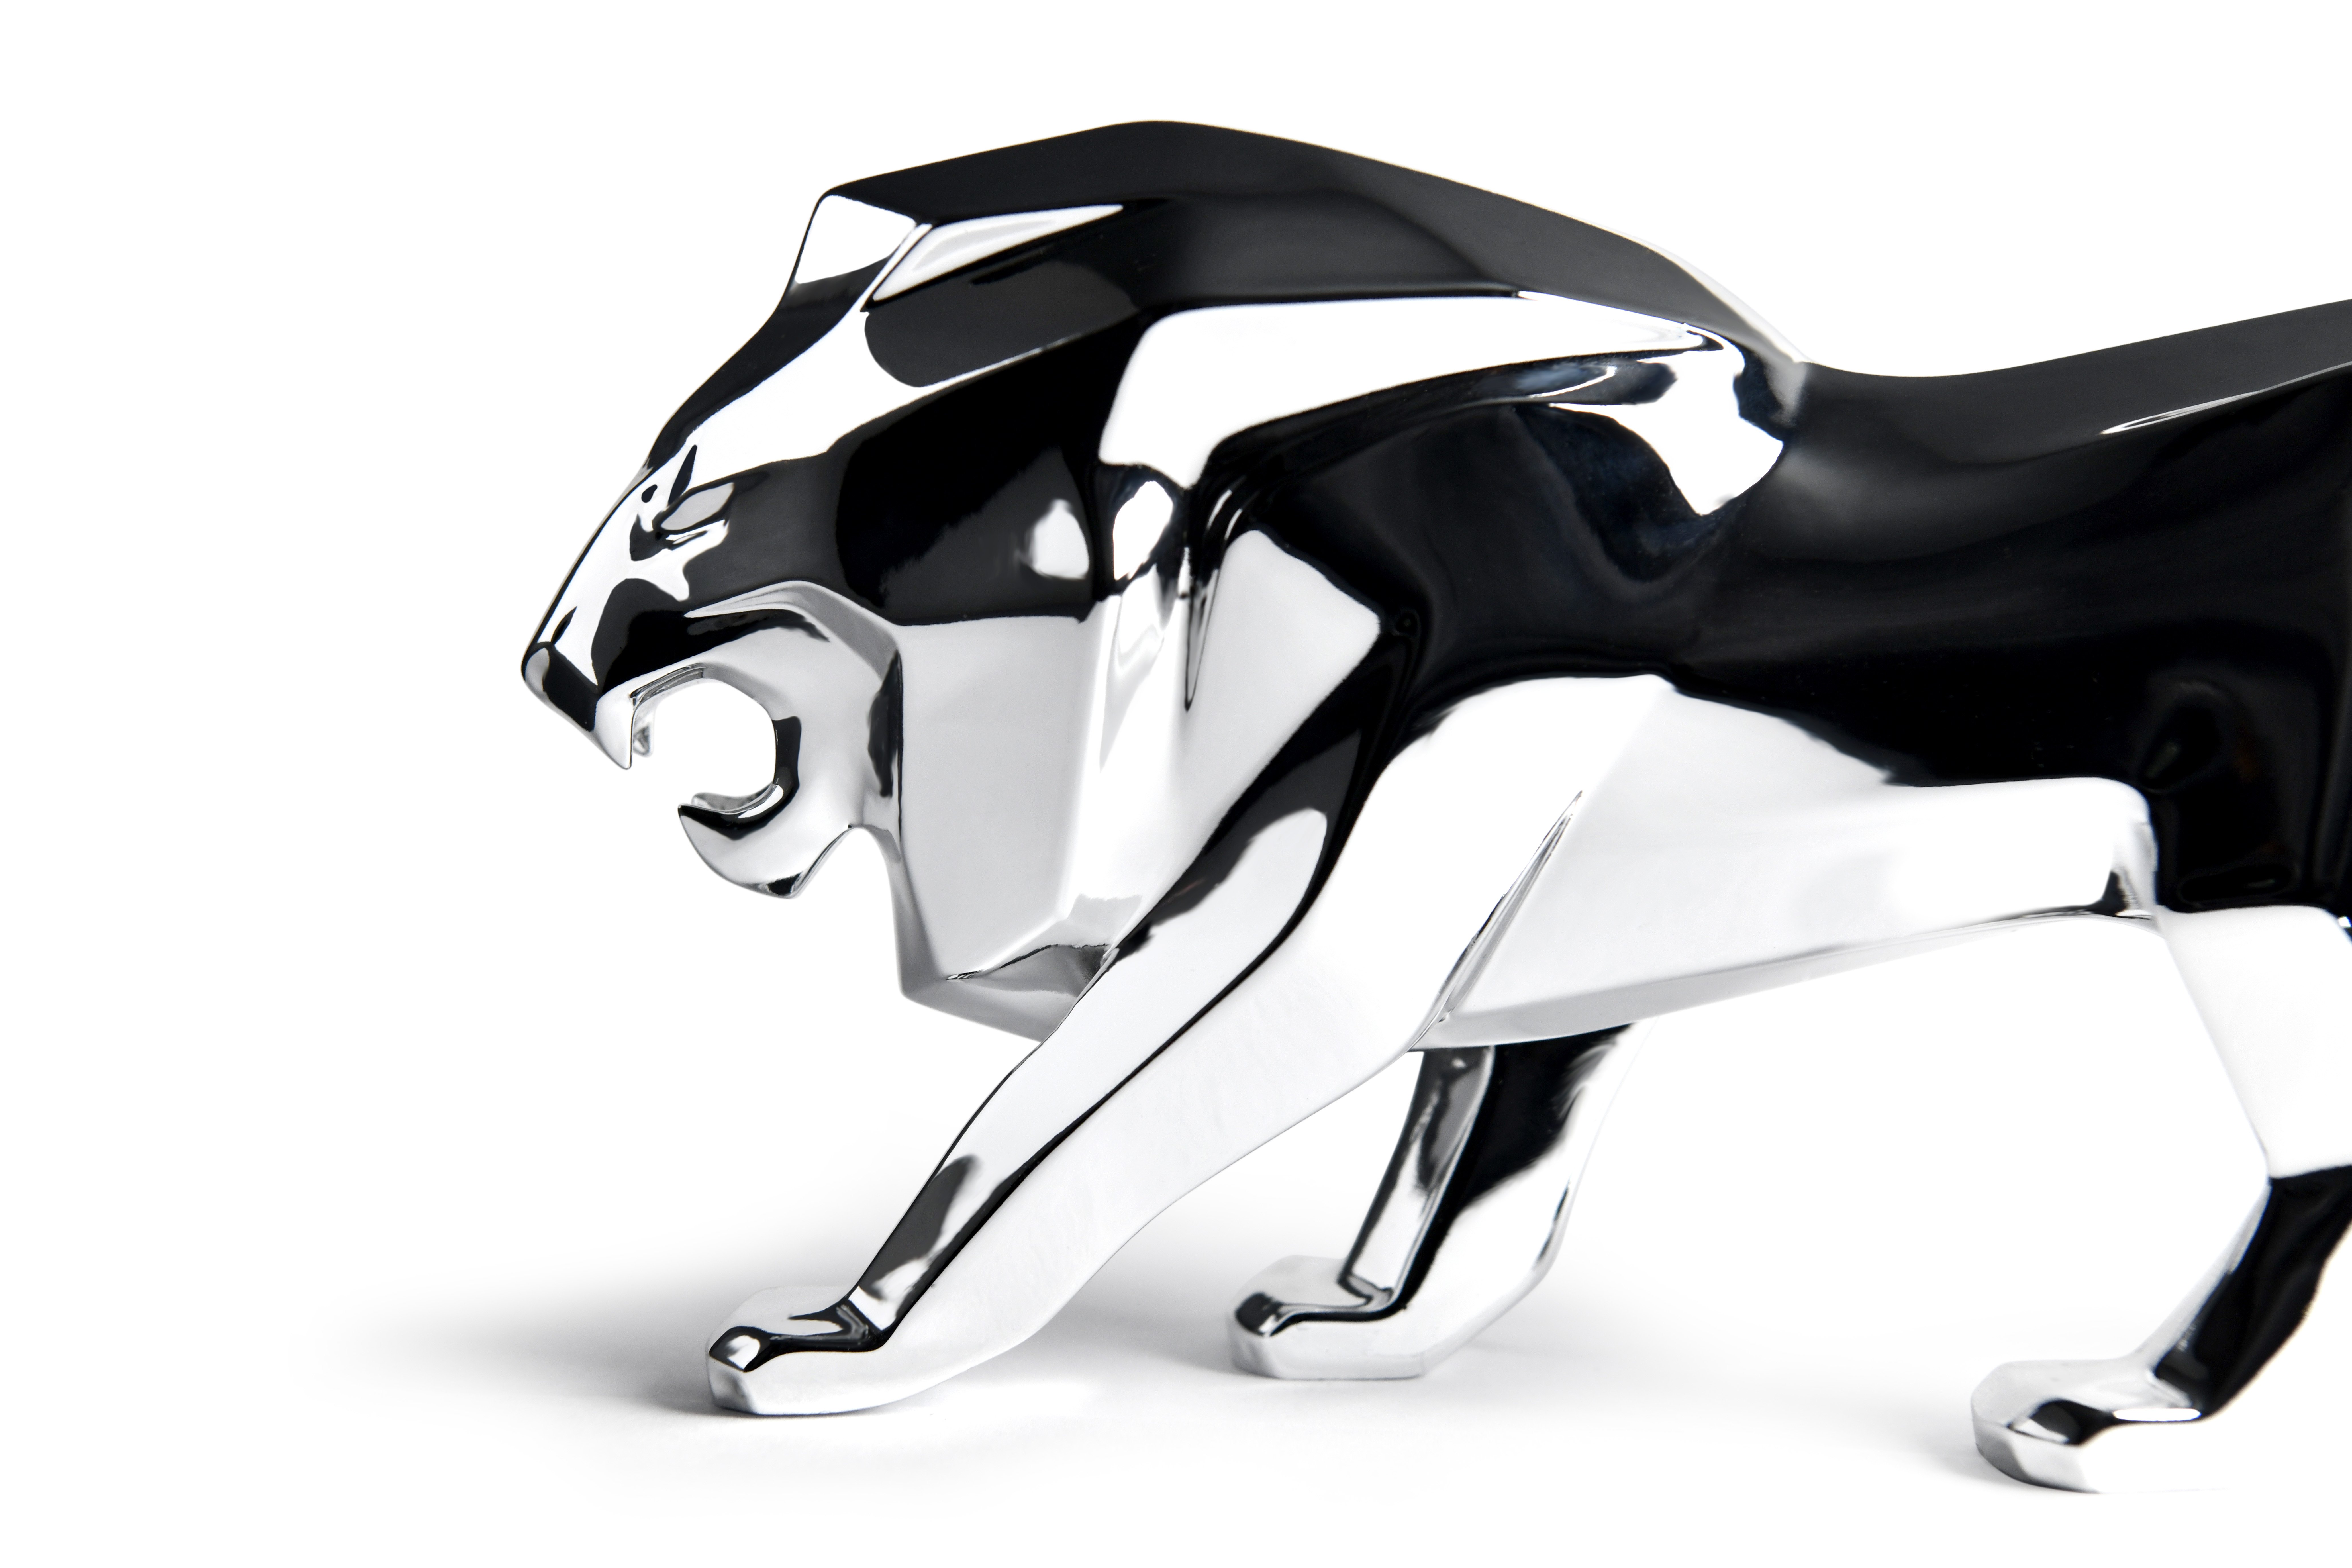 Peugeot_LionAmbassador_DesktopSculpture_003.jpg